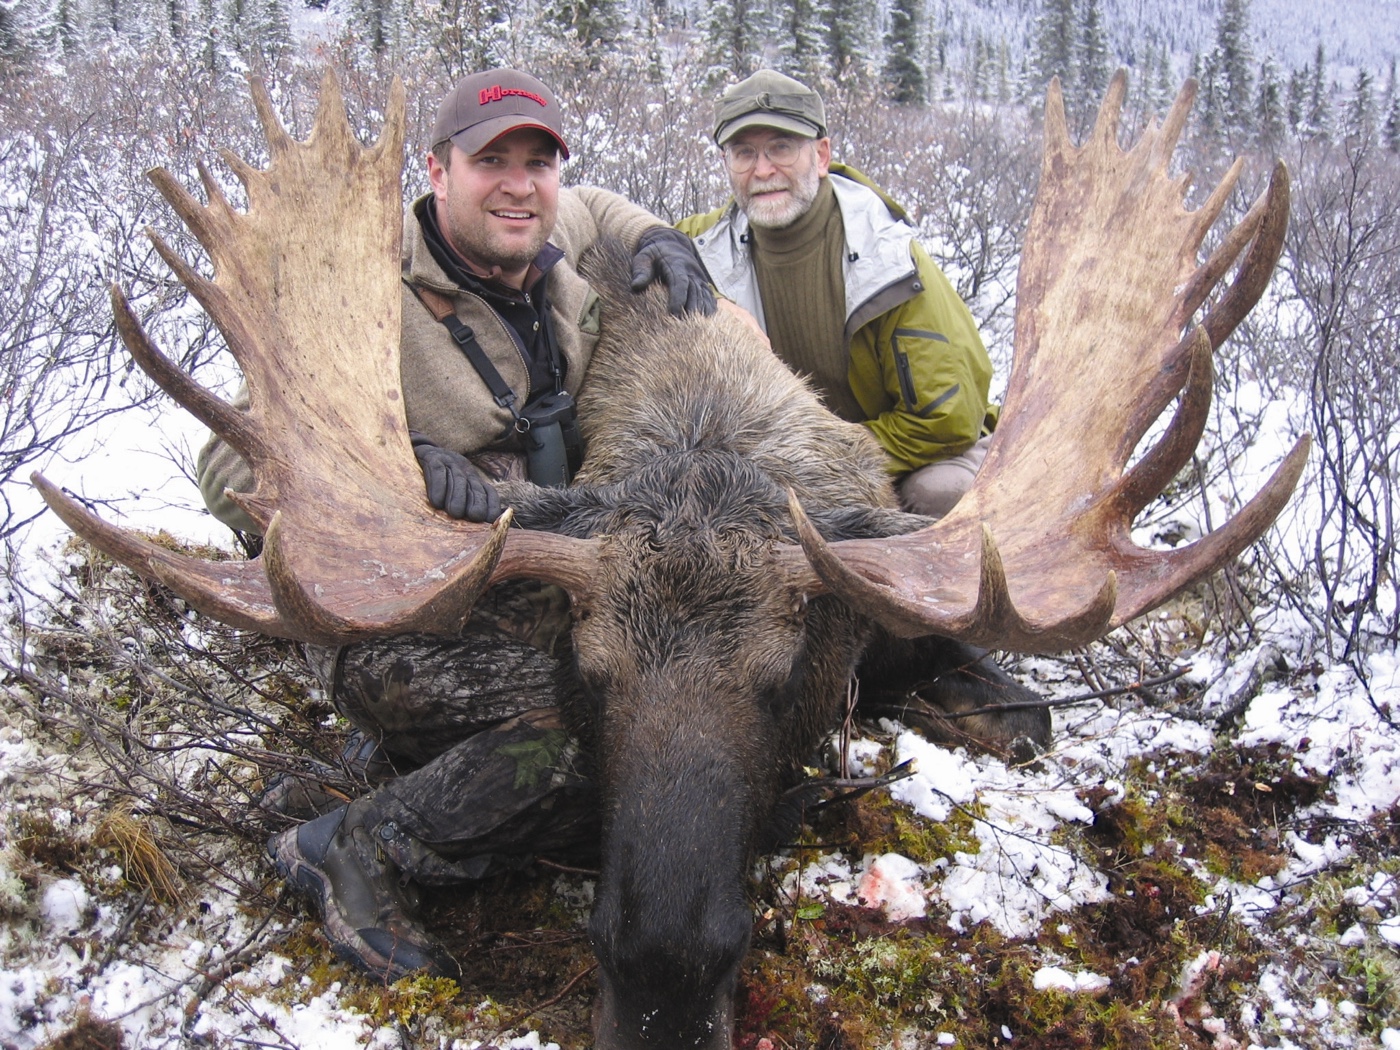 jason hornady and steve hornady on a moose hunt